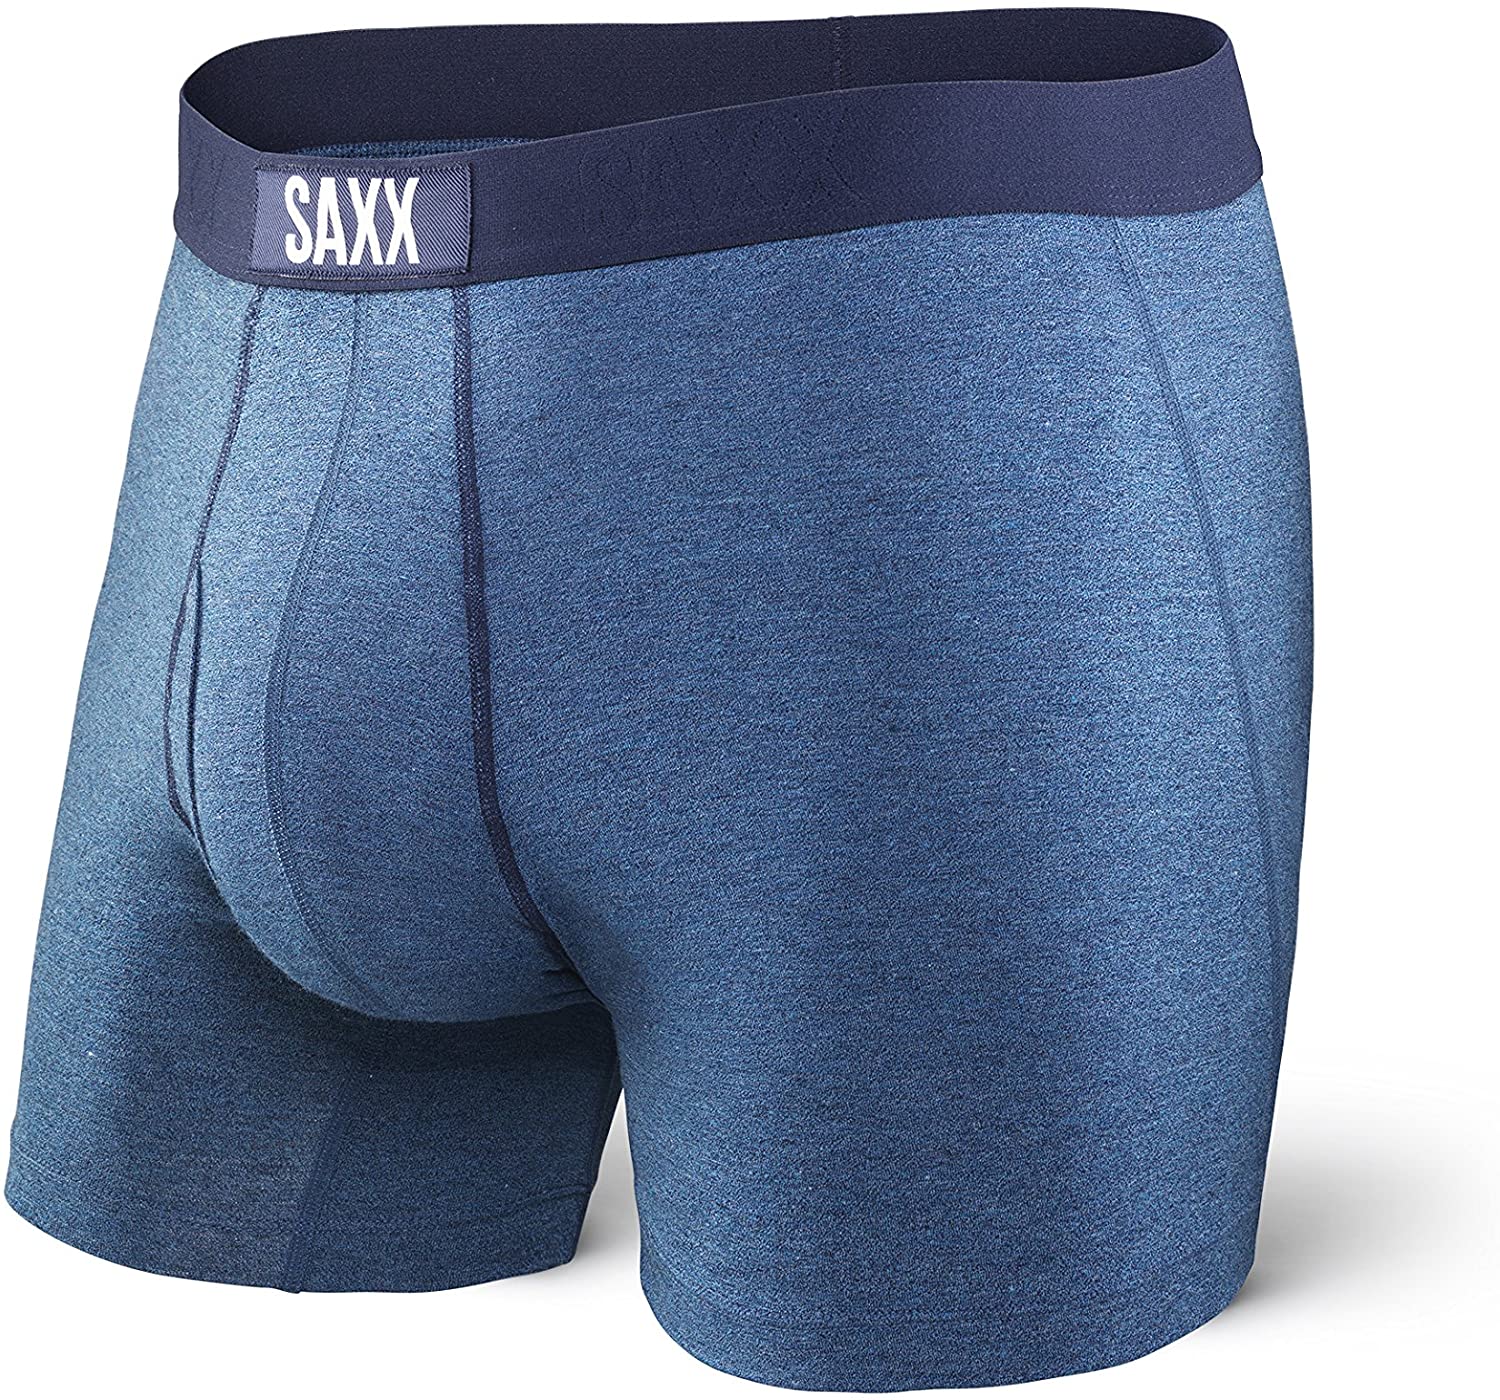 Saxx Underwear Men's Boxer Briefs- Ultra Men’s Underwear- Boxer Briefs ...